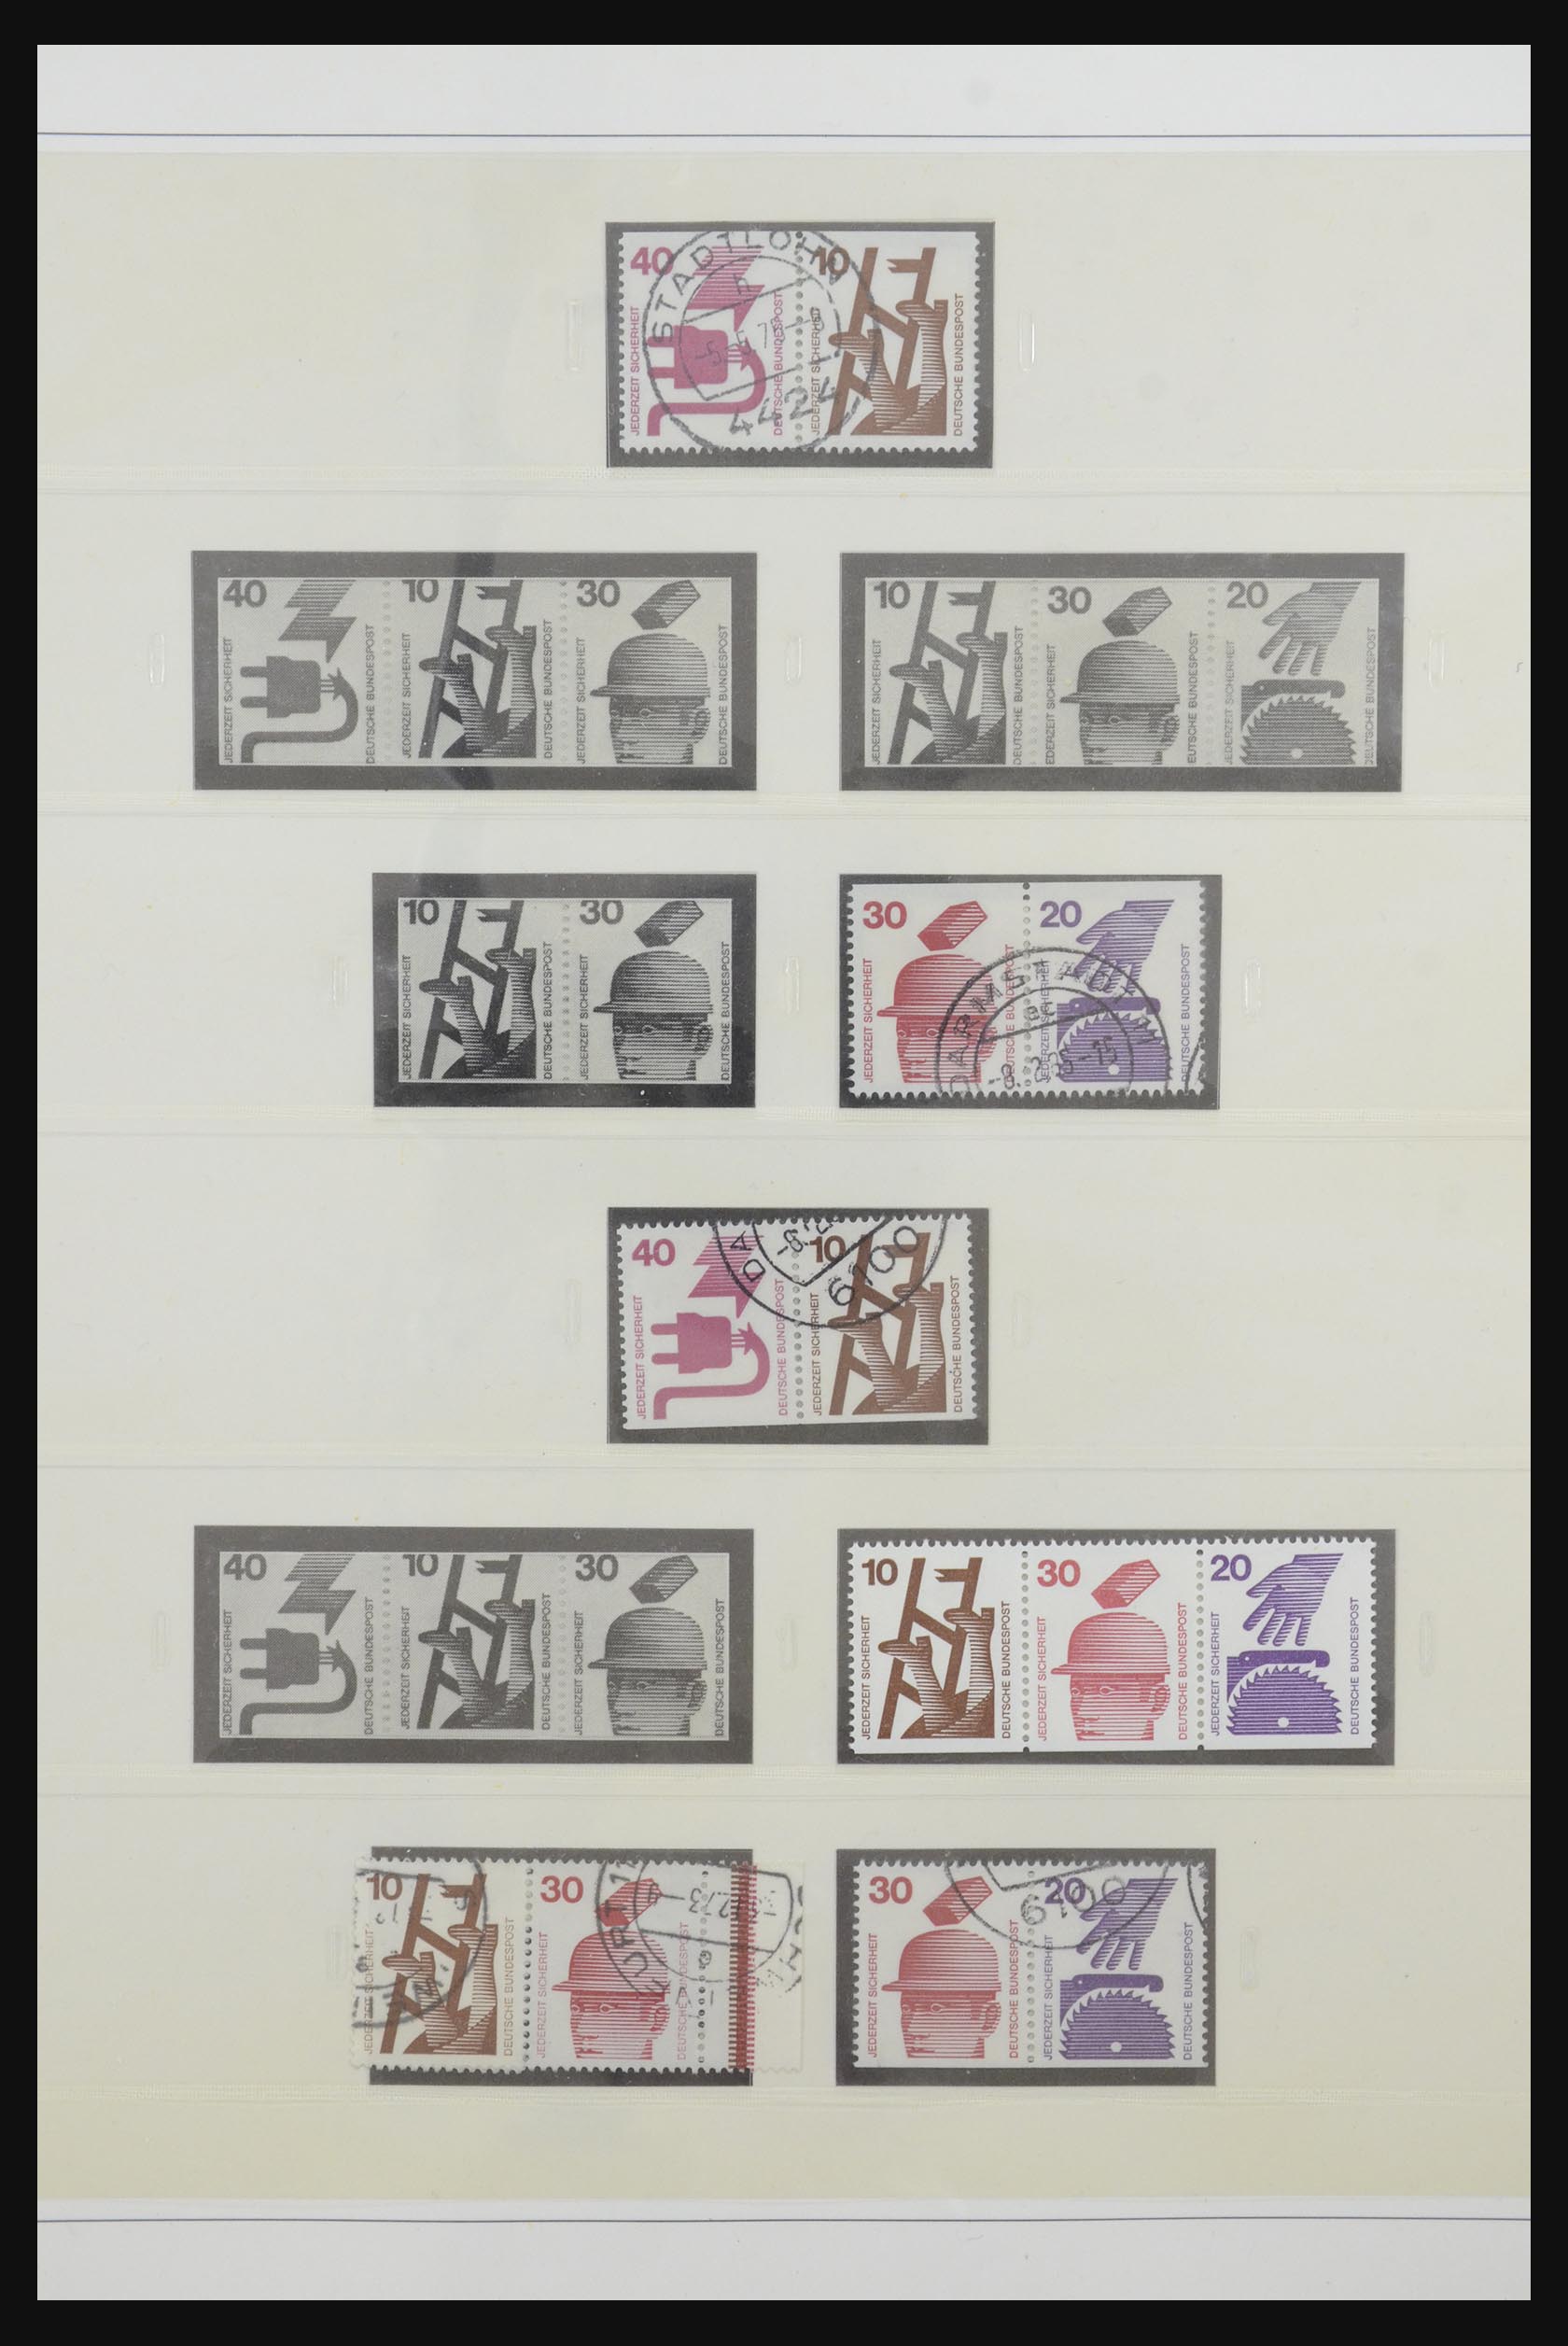 31842 051 - 31842 Bundespost combinations 1951-2003.